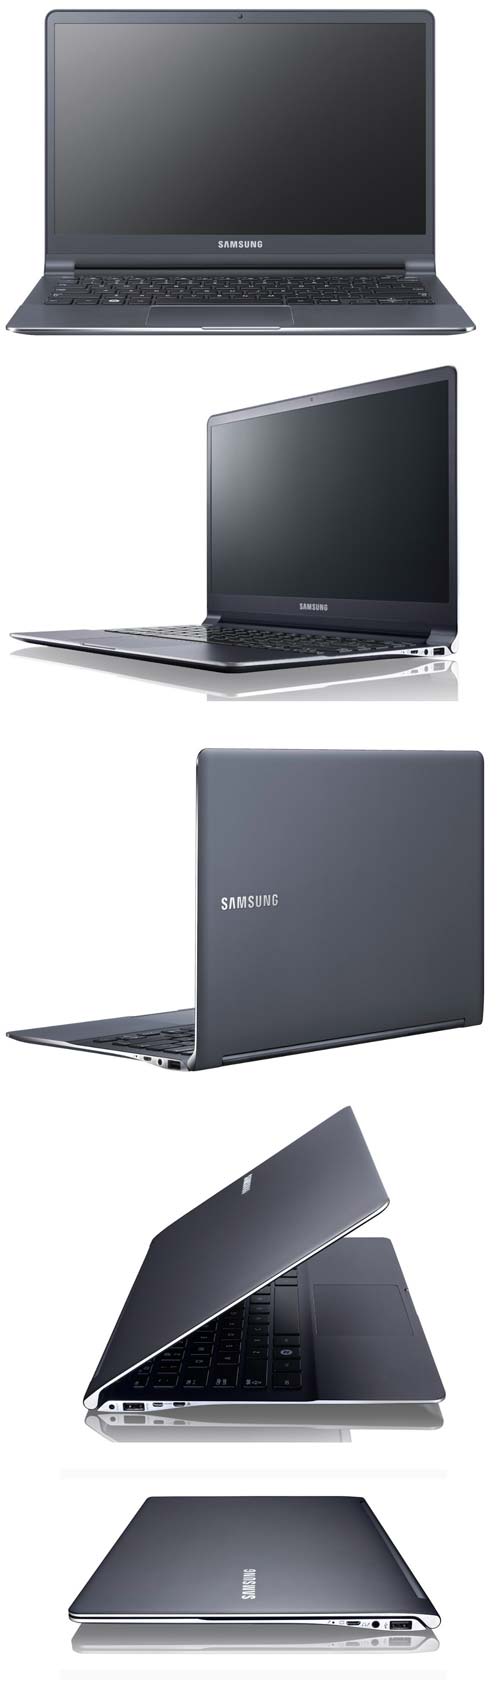 Обновленные в плане толщины корпуса ноутбуки 9-й серии от Samsung